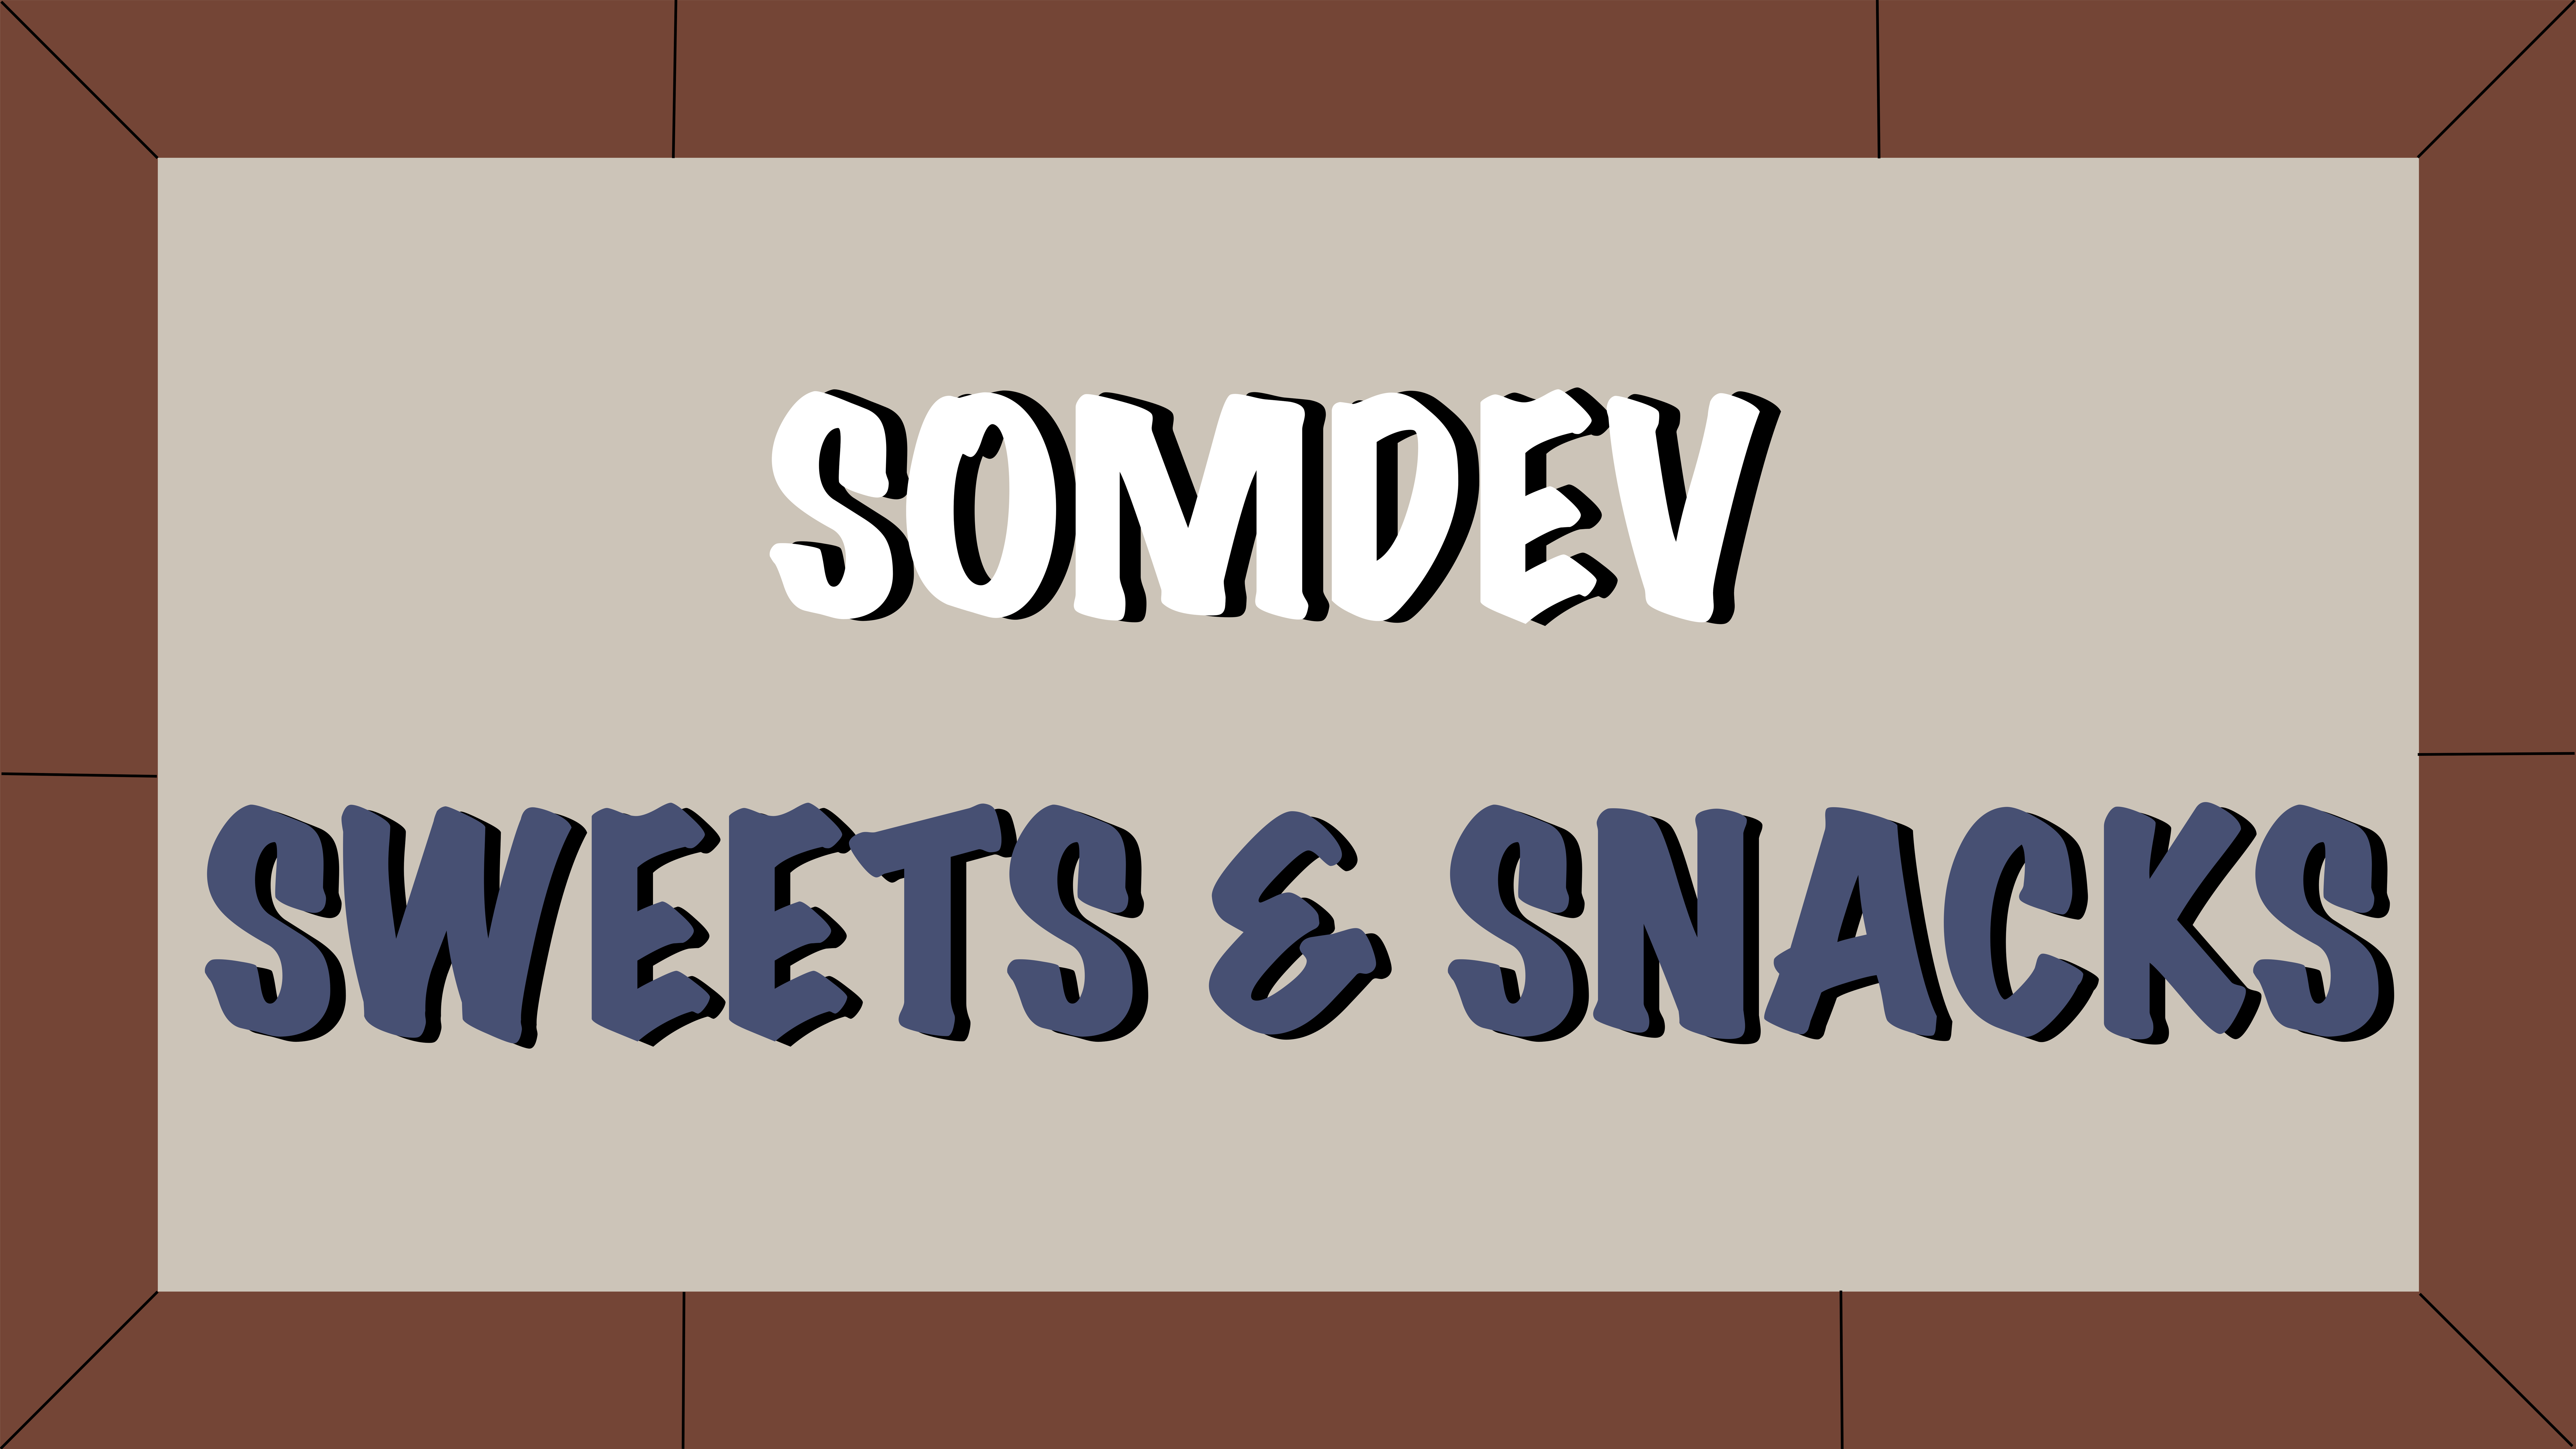 Somdev Sweets & Snacks